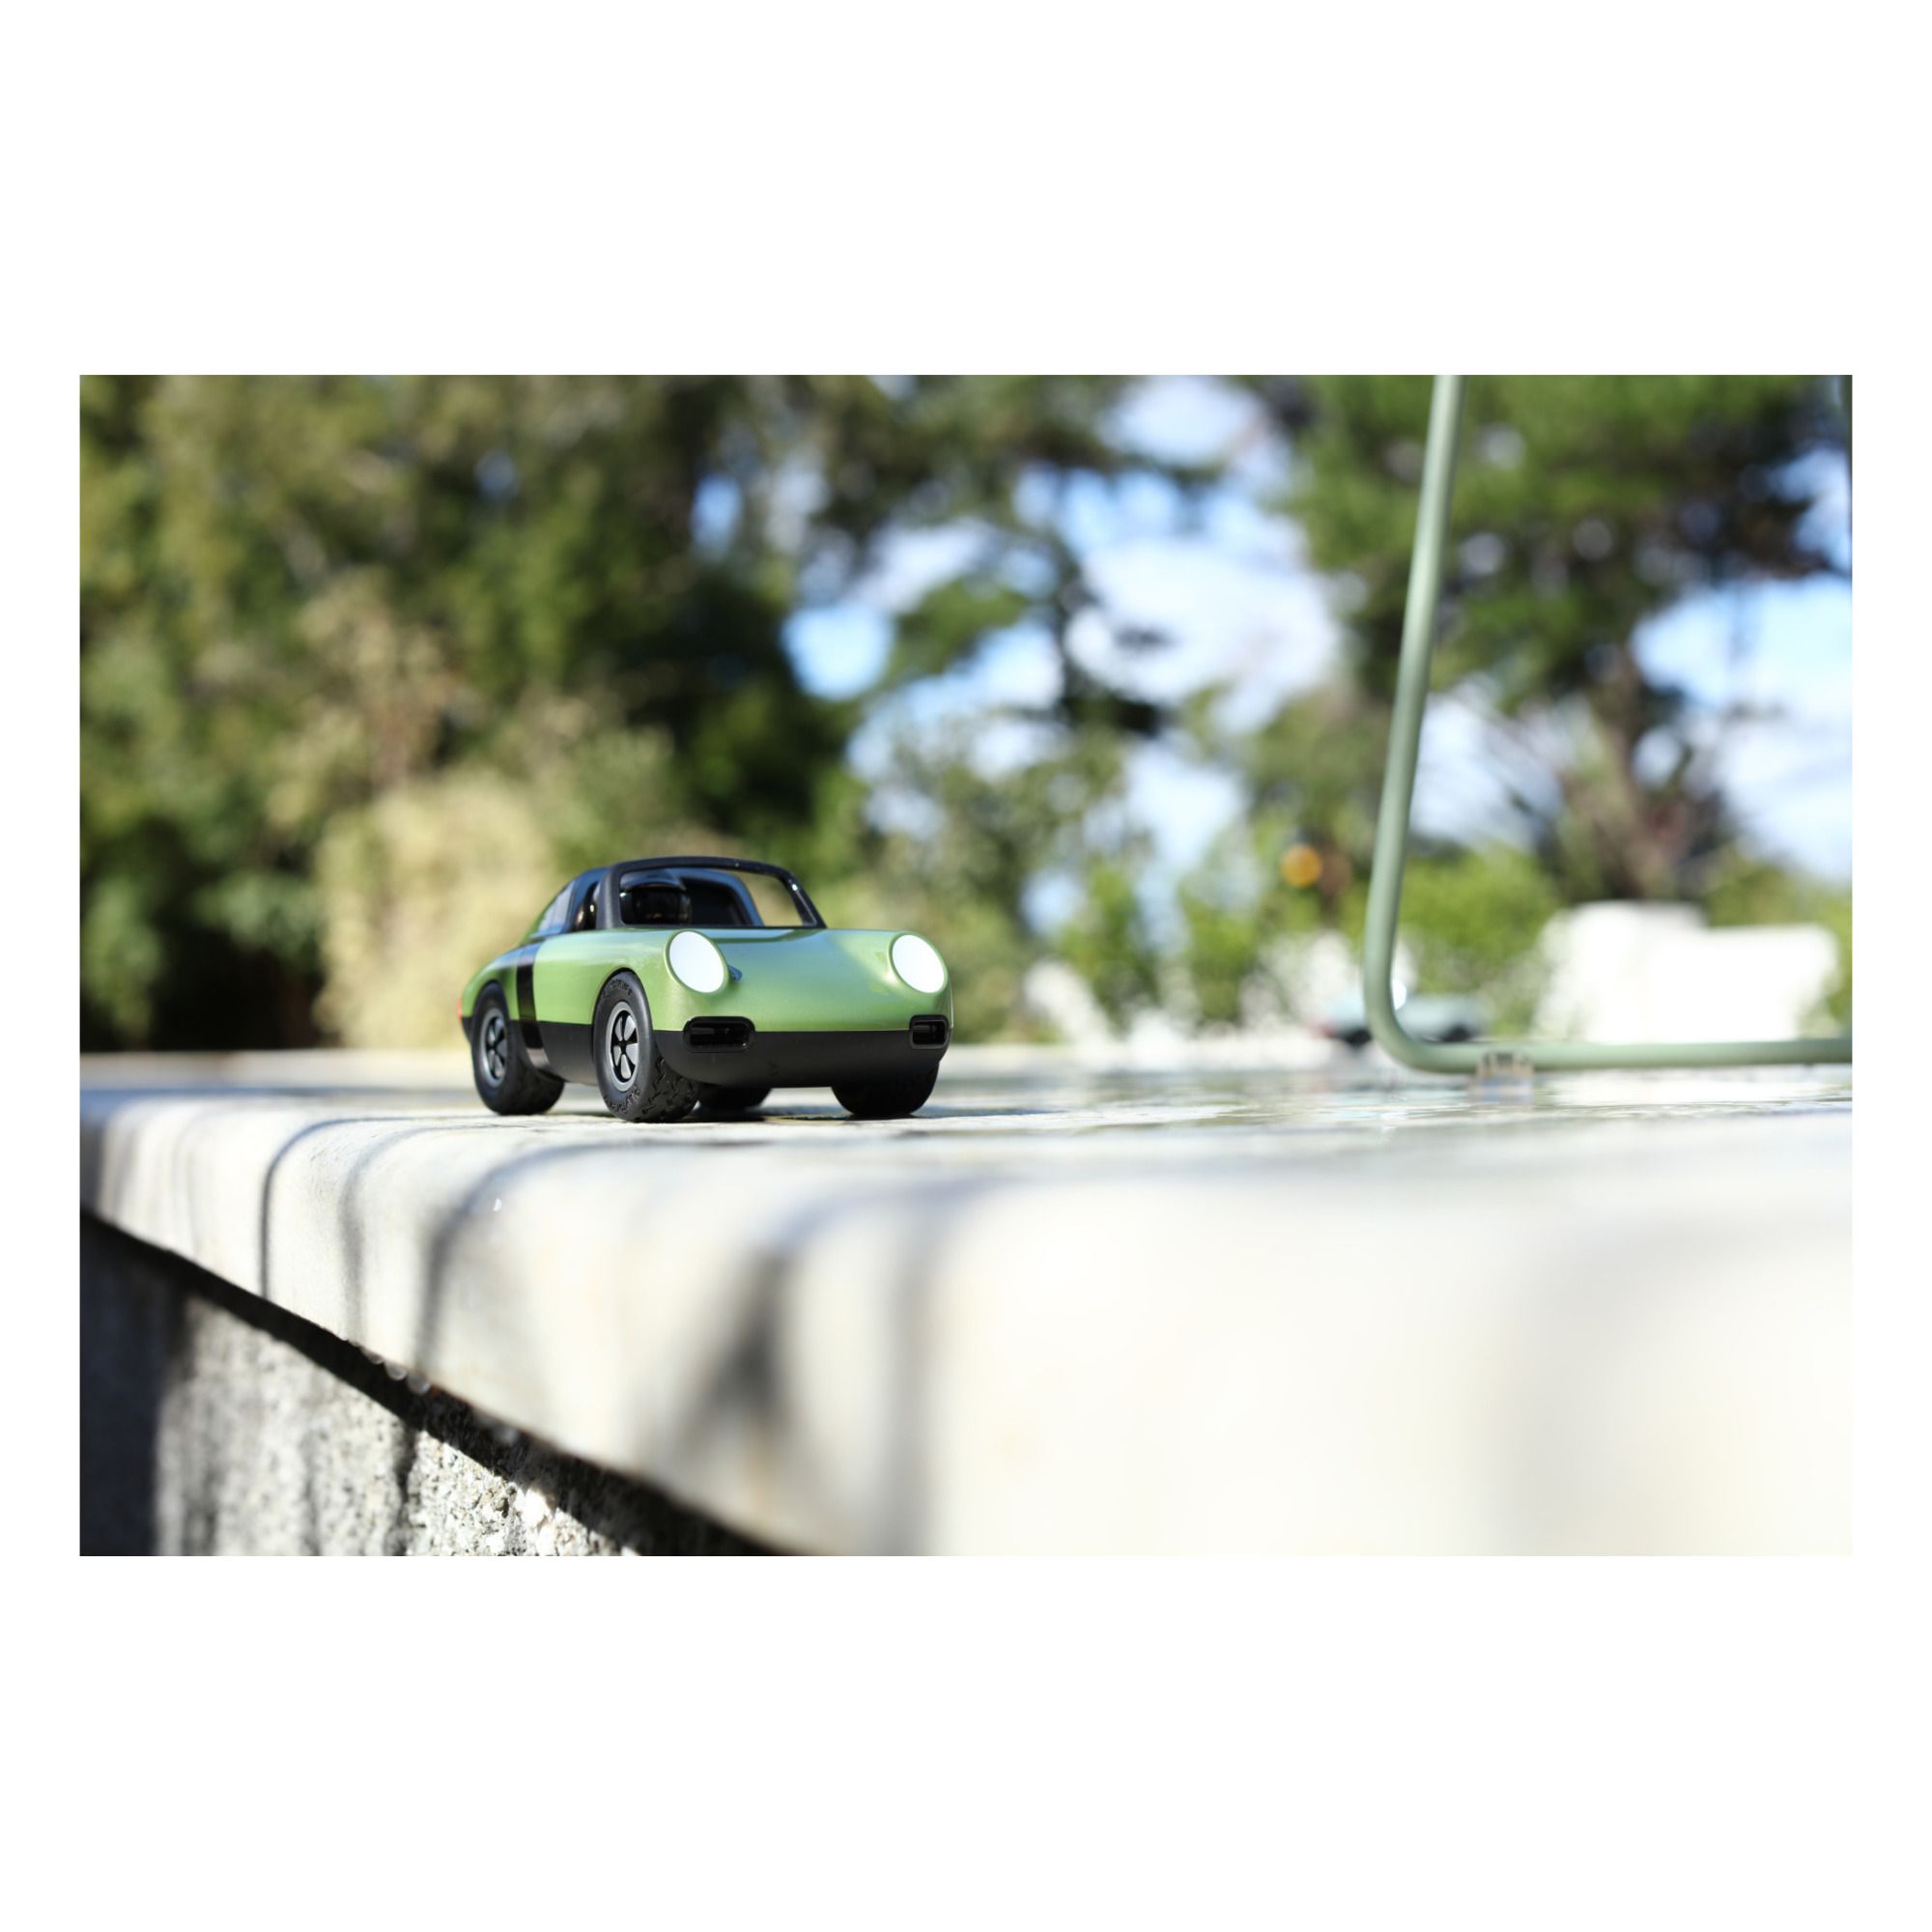 Luft Spielzeugauto Grünolive- Produktbild Nr. 3